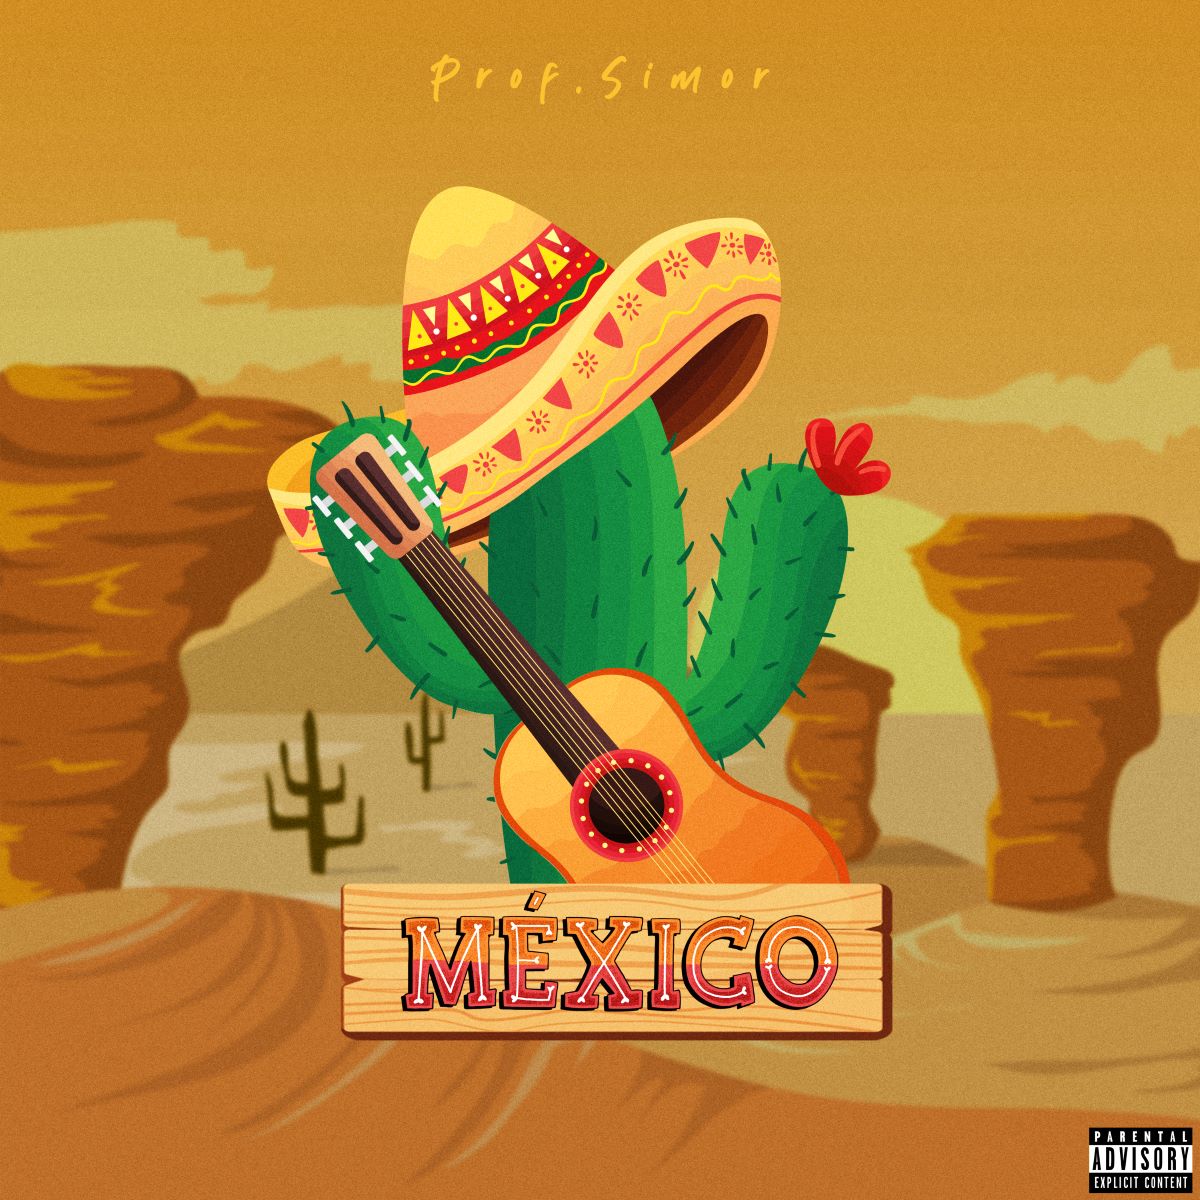 Prof. Simor – Il nuovo singolo “Mexico”